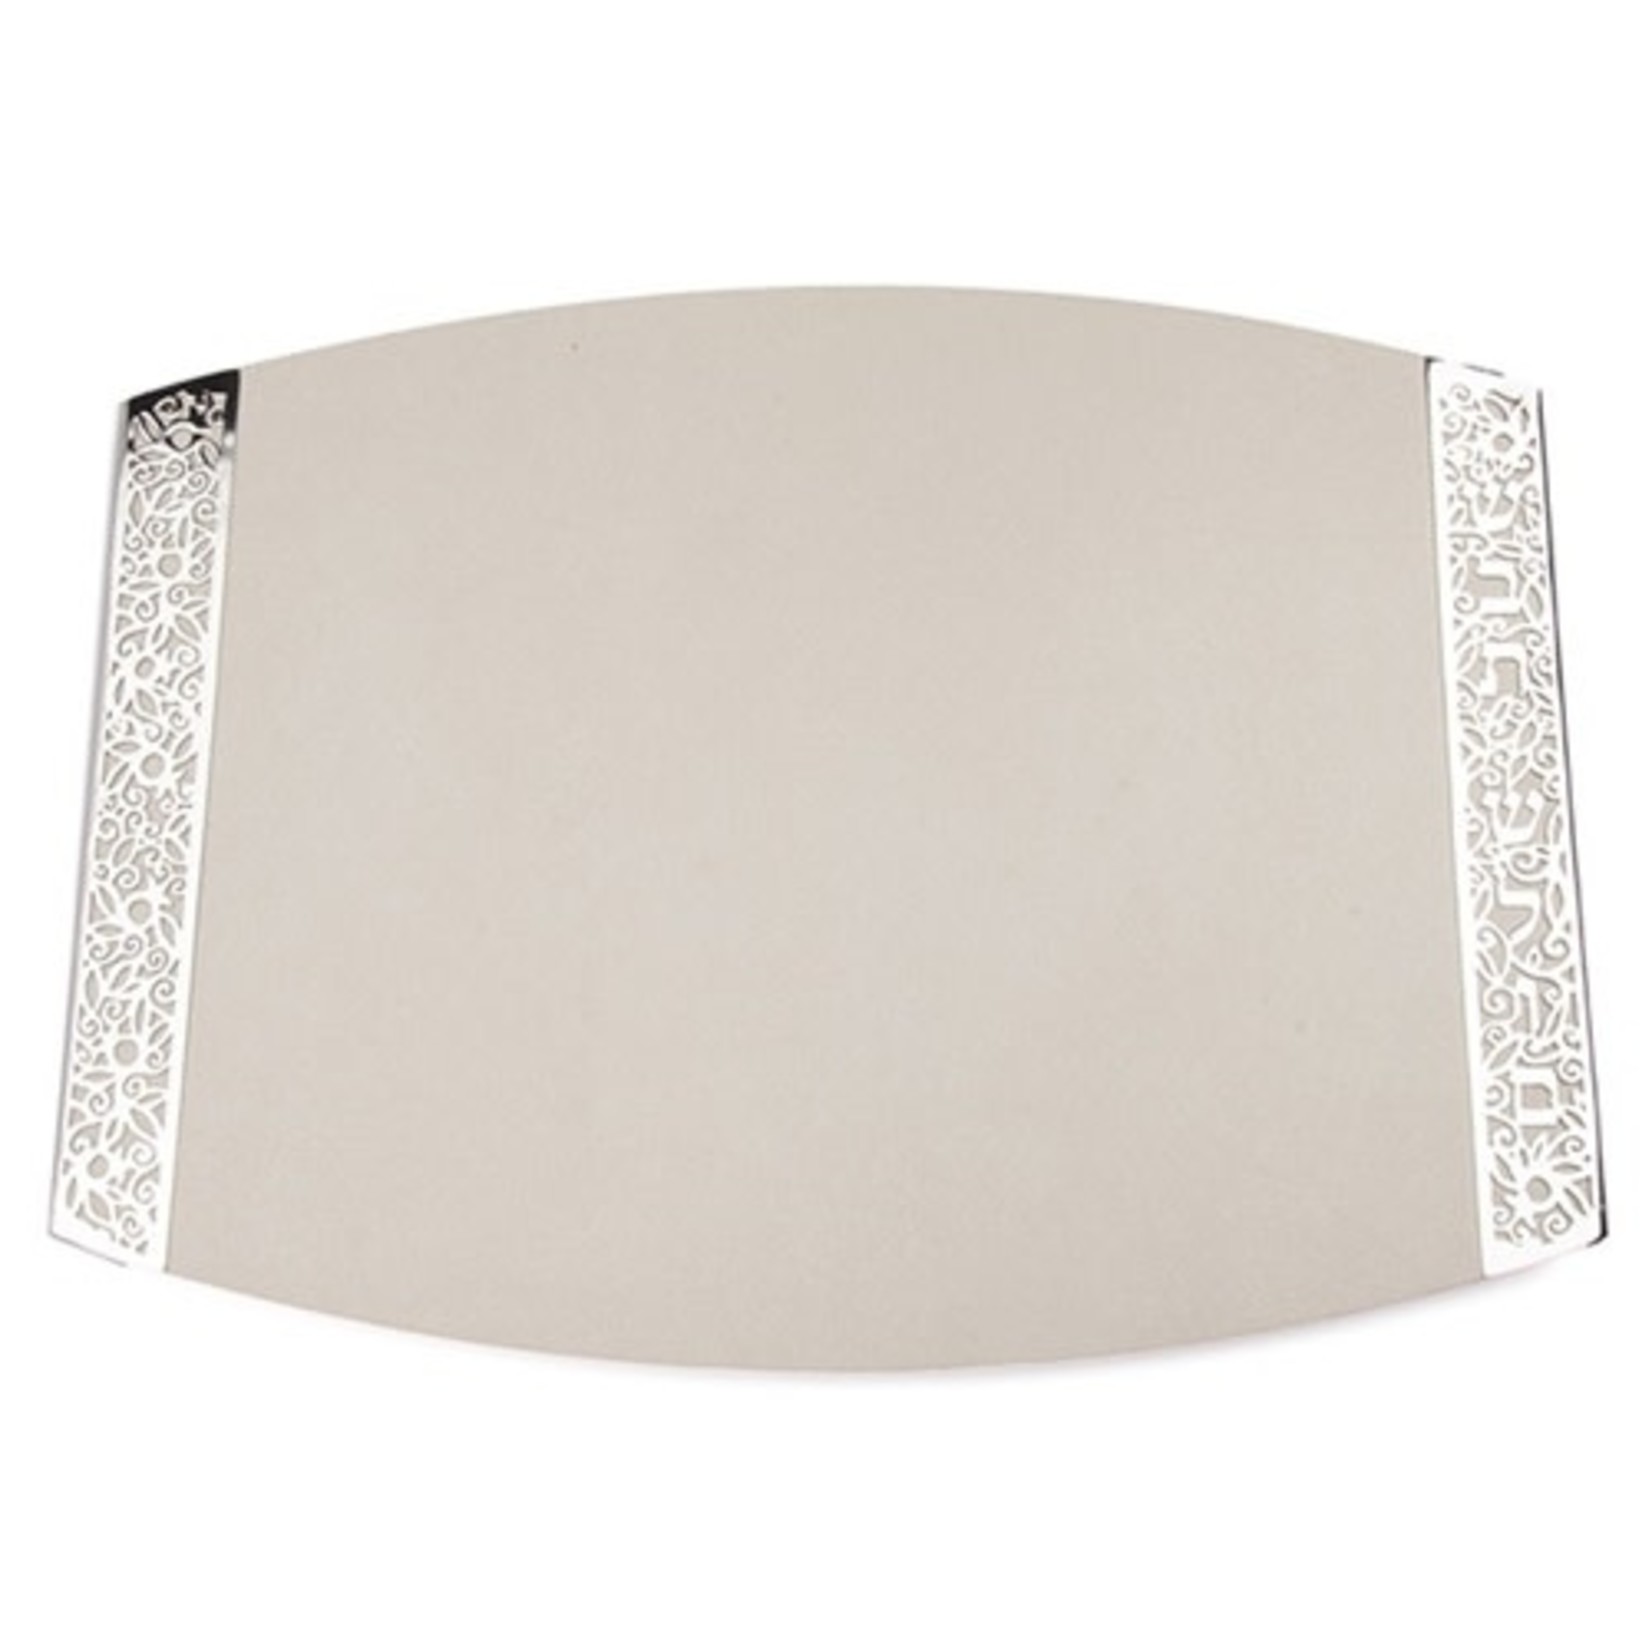 Majestic Challah Board - Porcelain- Metal Cutout - White - 13"W x 17"L x 3"H - YE-CBR-1